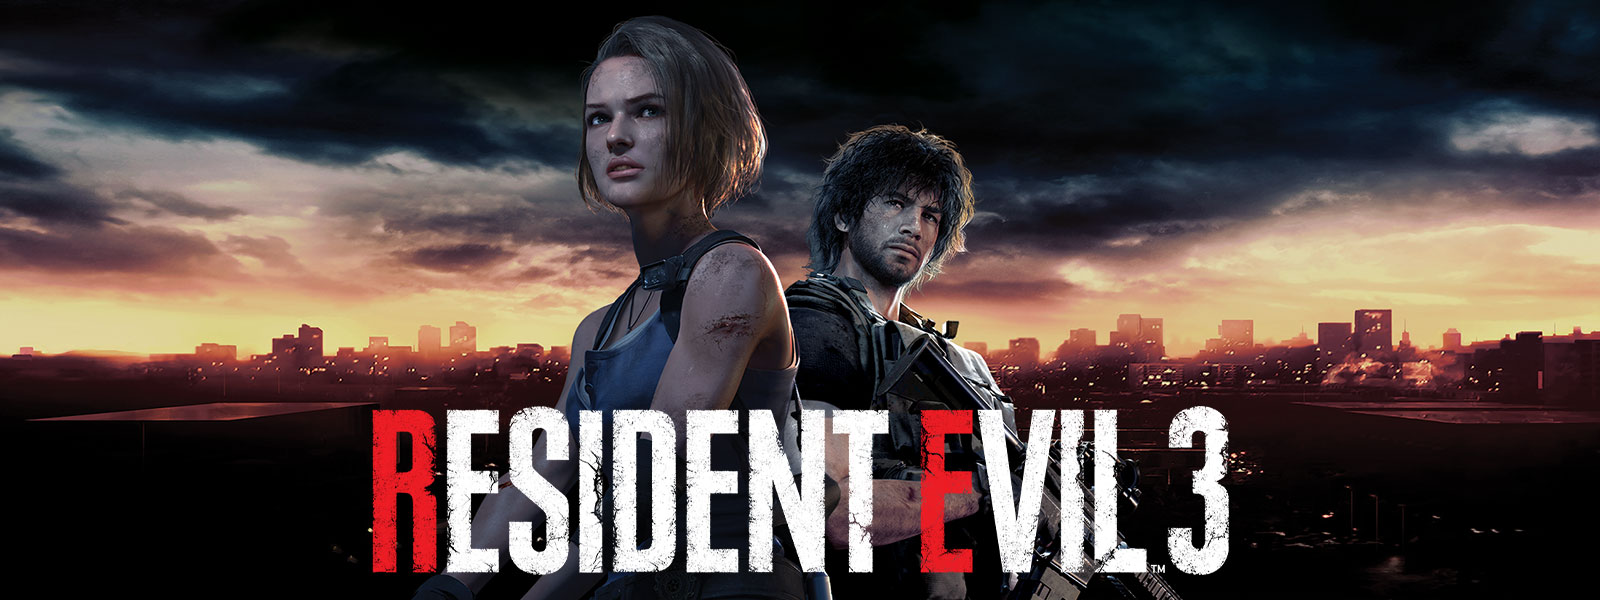 Resident Evil 3, Jill Valentine y Carlos Oliveira parados con el horizonte de Raccoon City detrás de ellos